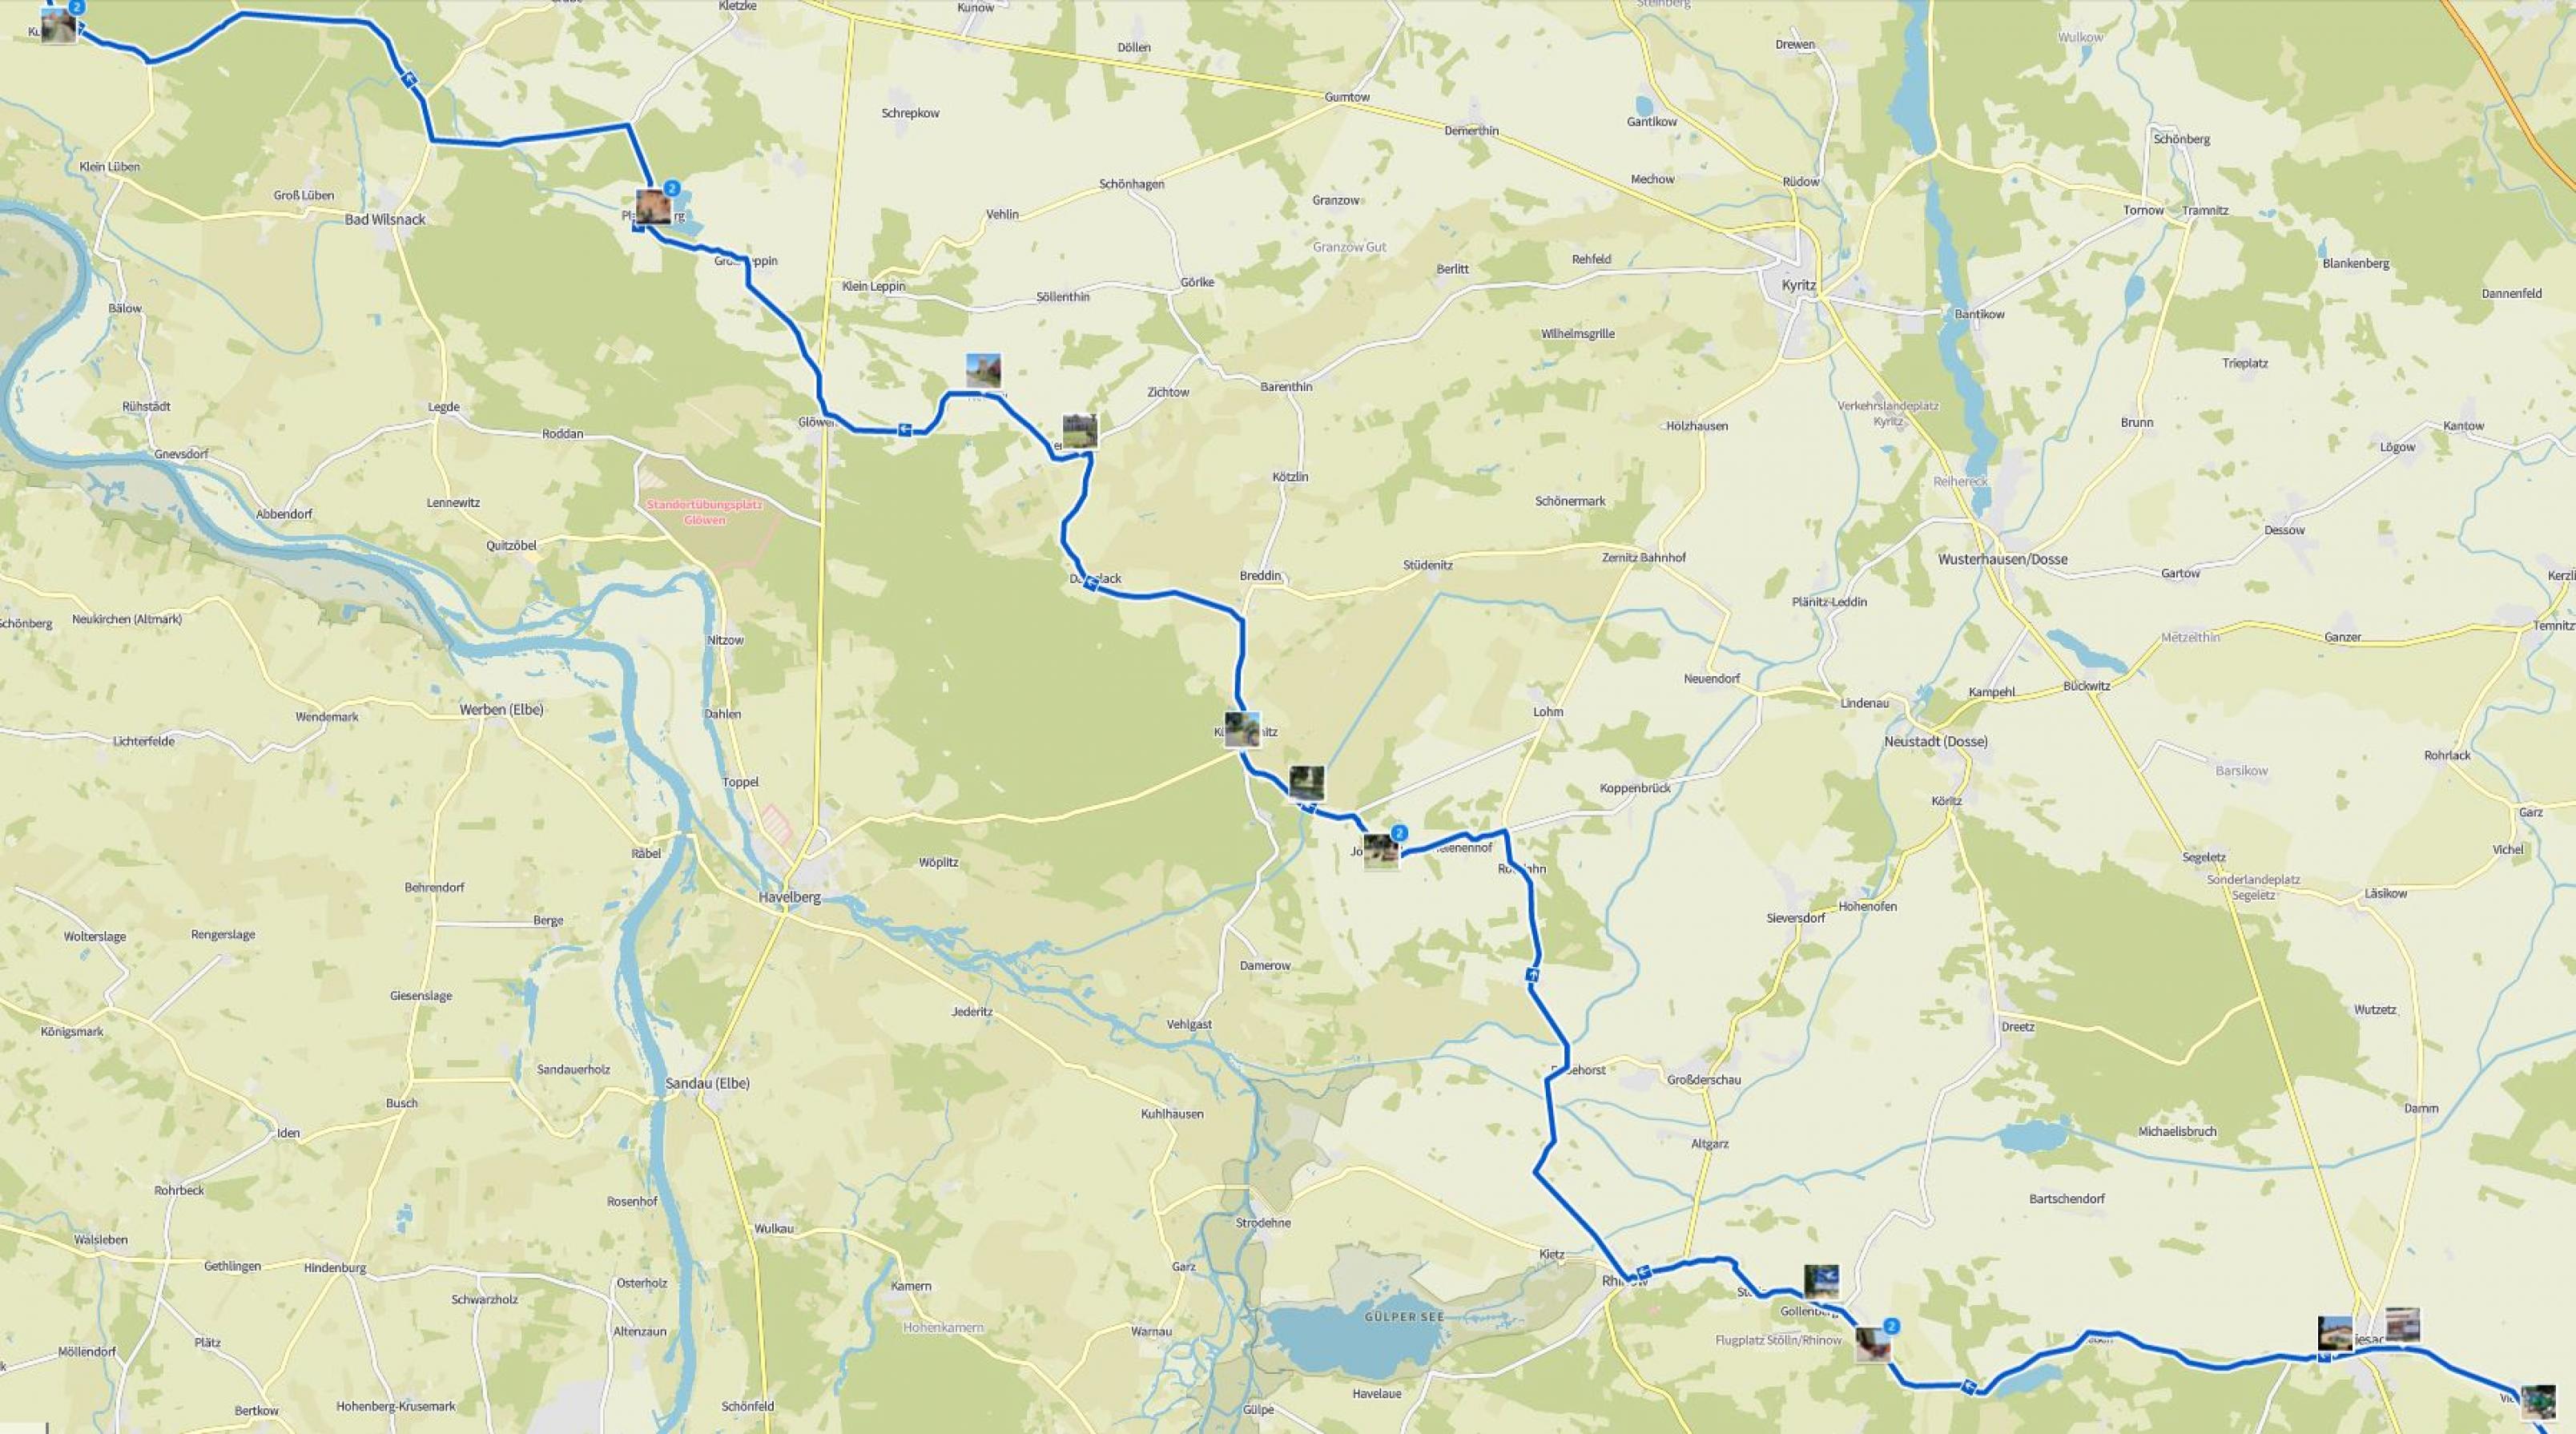 Landkarte mit der Reiseroute des RadelndenReporters, auf der die Fotostationen vermerkt sind.